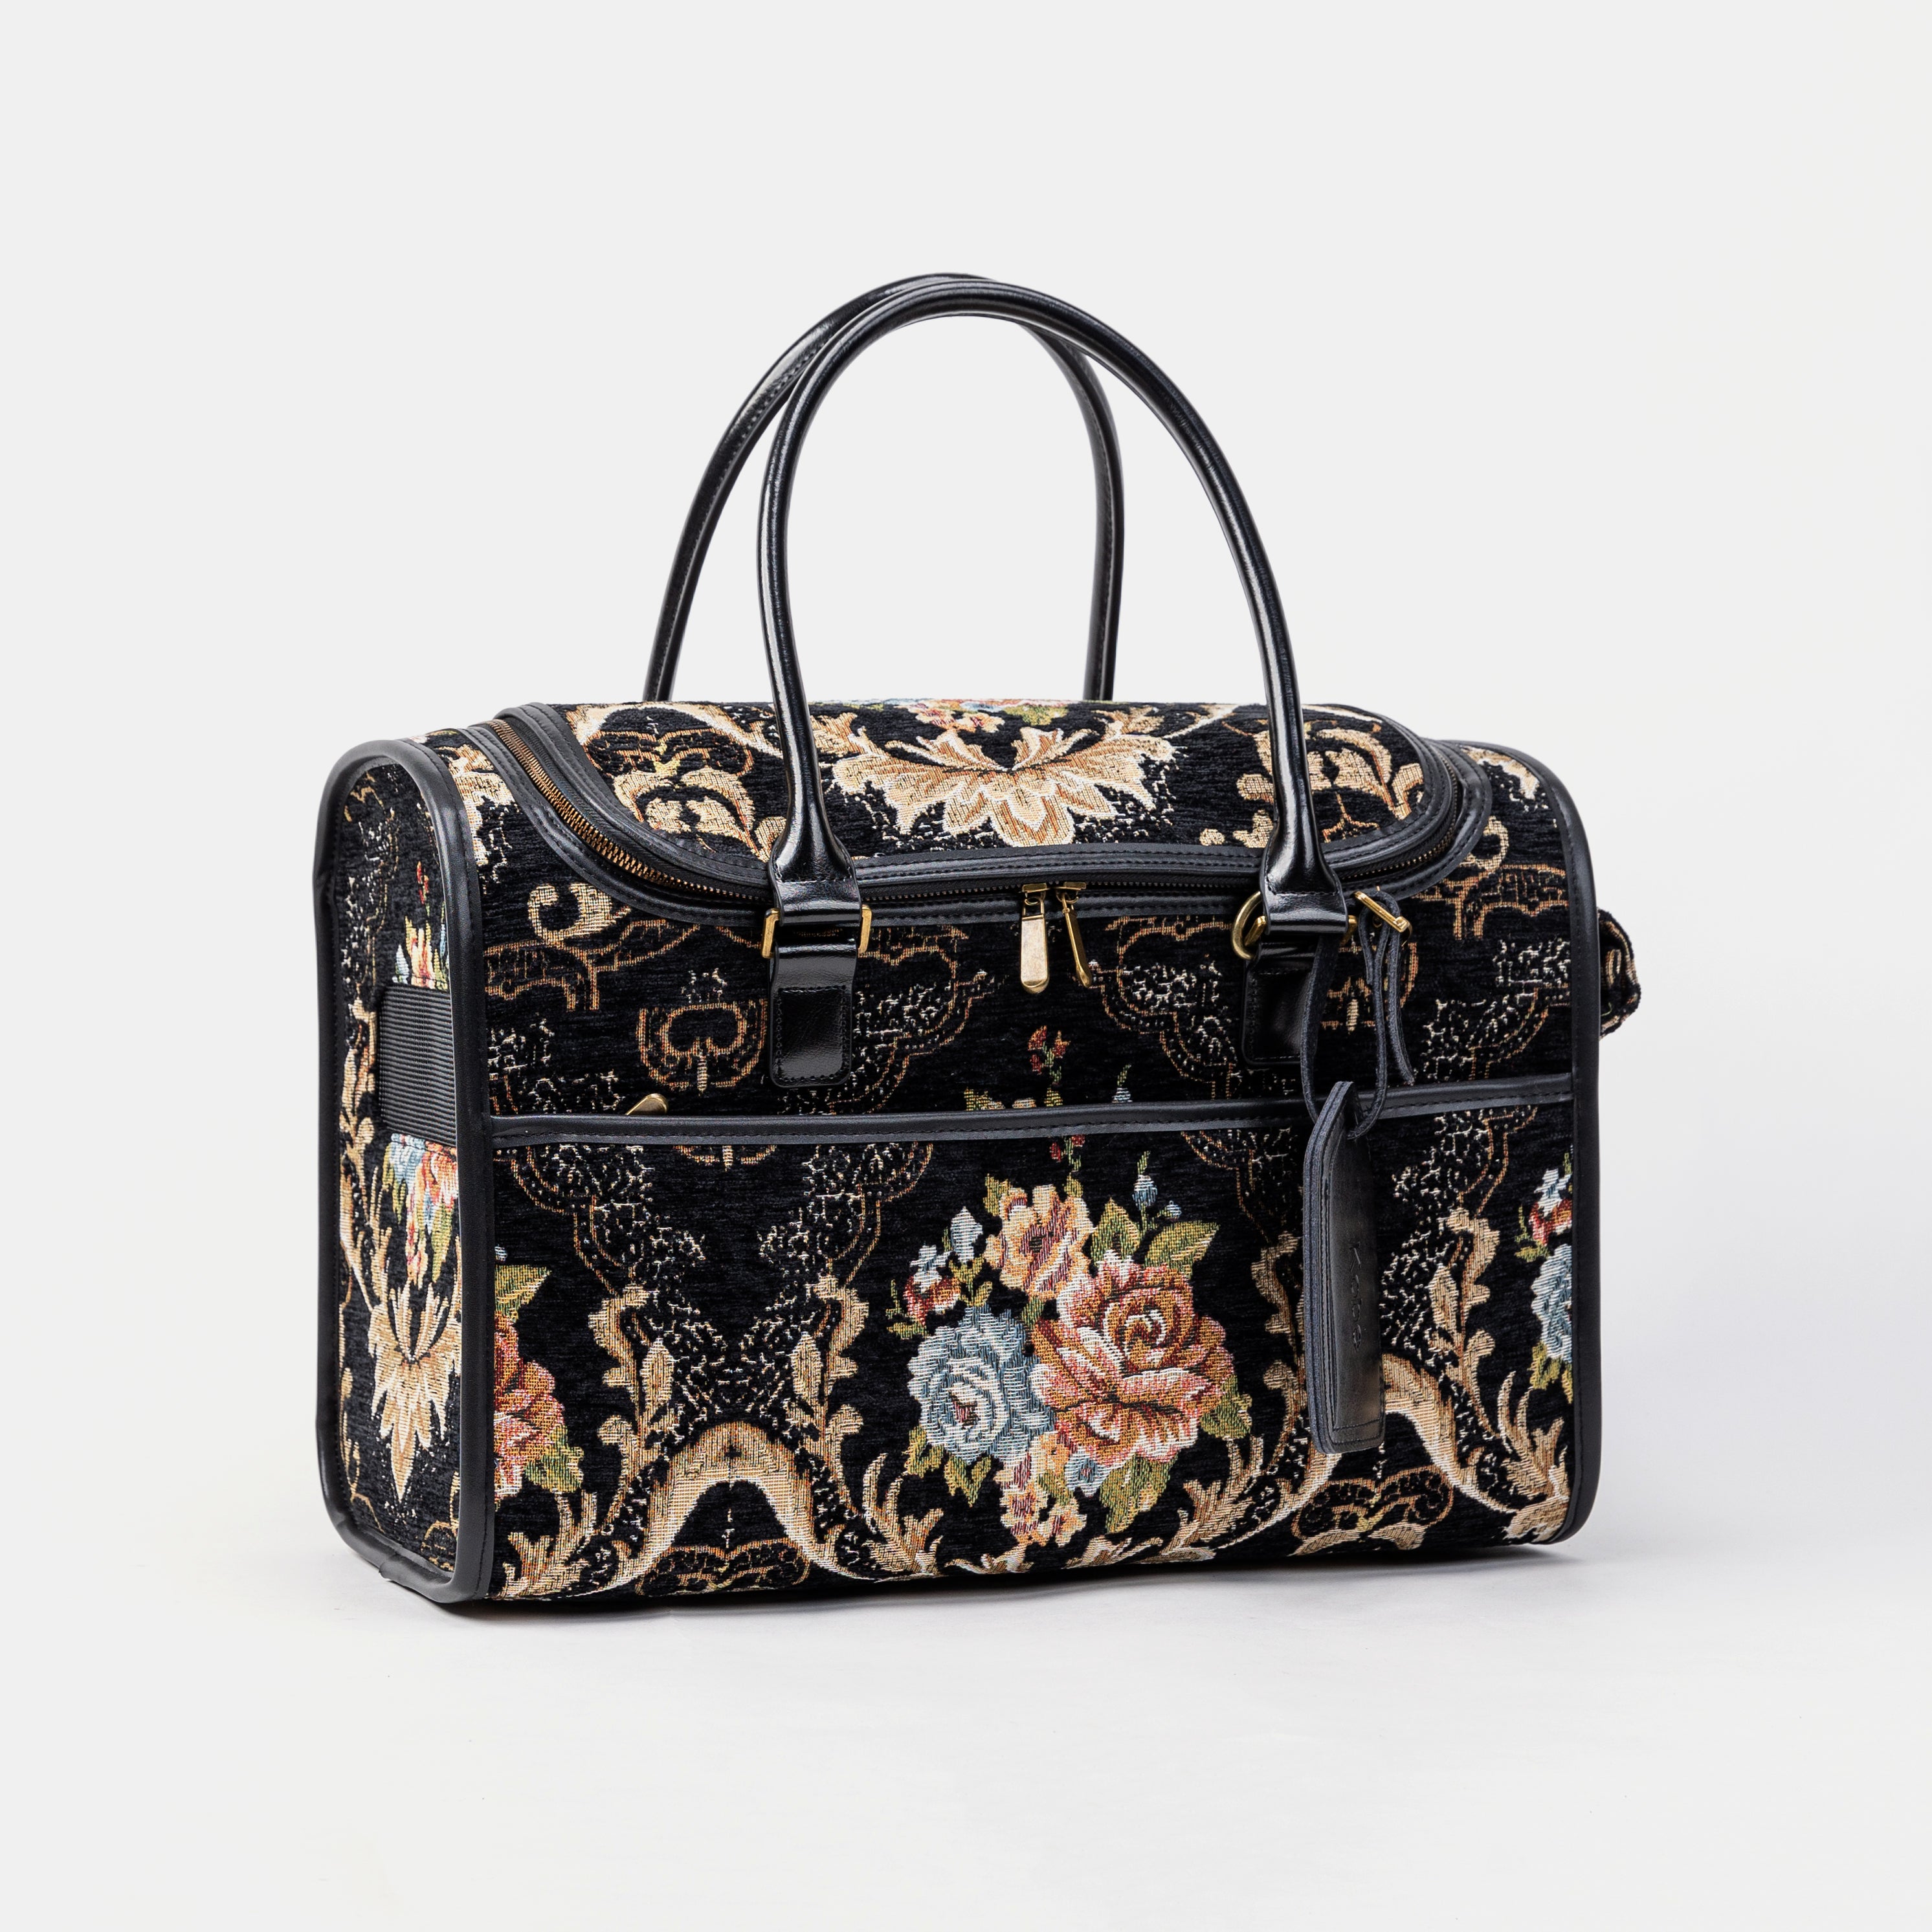 Travel Dog Carrier Bag Floral Black Overview